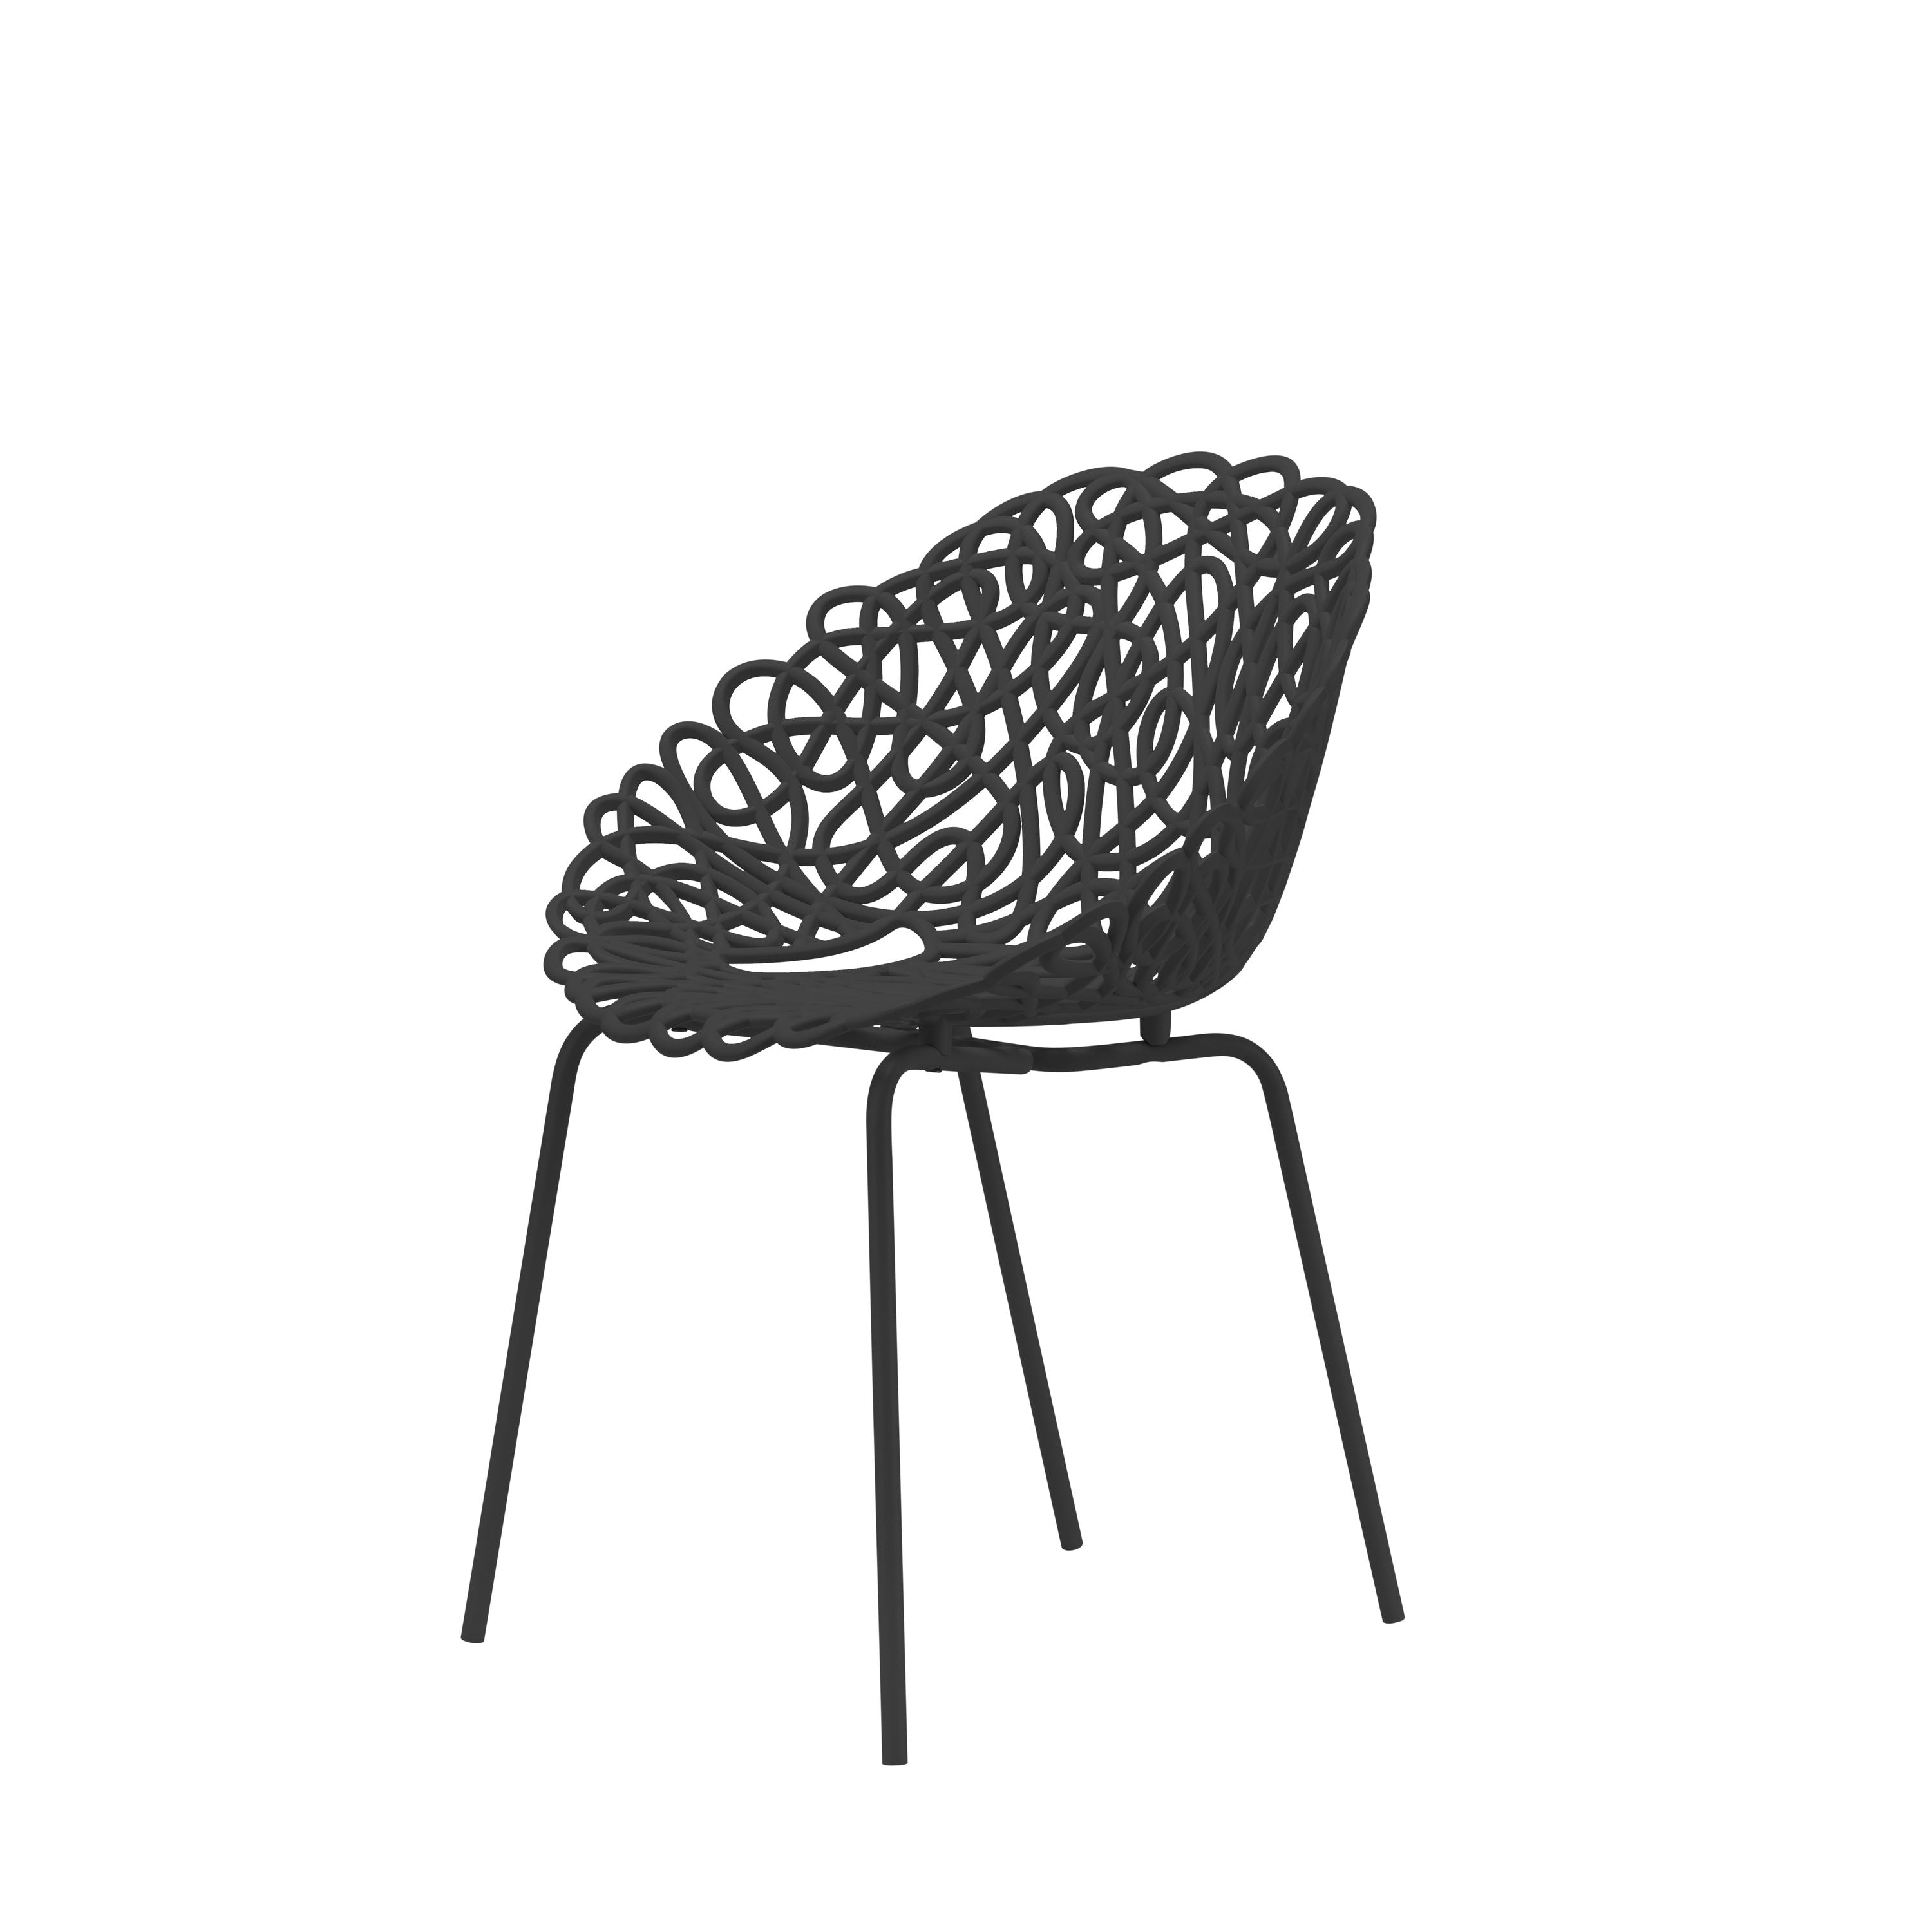 Qeeboo Bacana stol udendørs sæt på 2 stk, sort